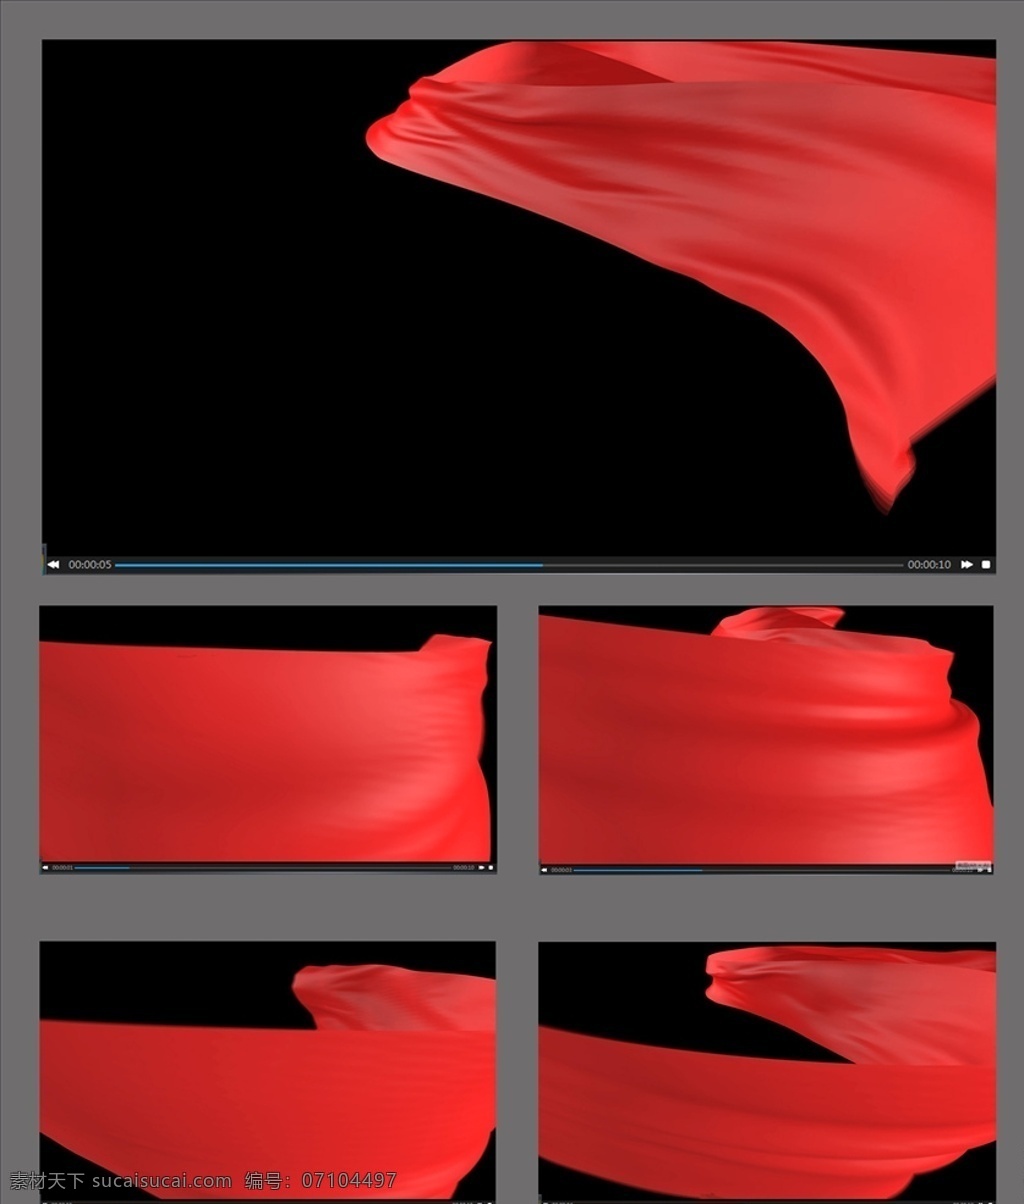 红 丝绸 飘动 视频 红丝绸飘动 转场视频素材 丝绸动画 丝绸转场 转场素材 大红丝绸 转场 多媒体 flash 动画 动画素材 mp4